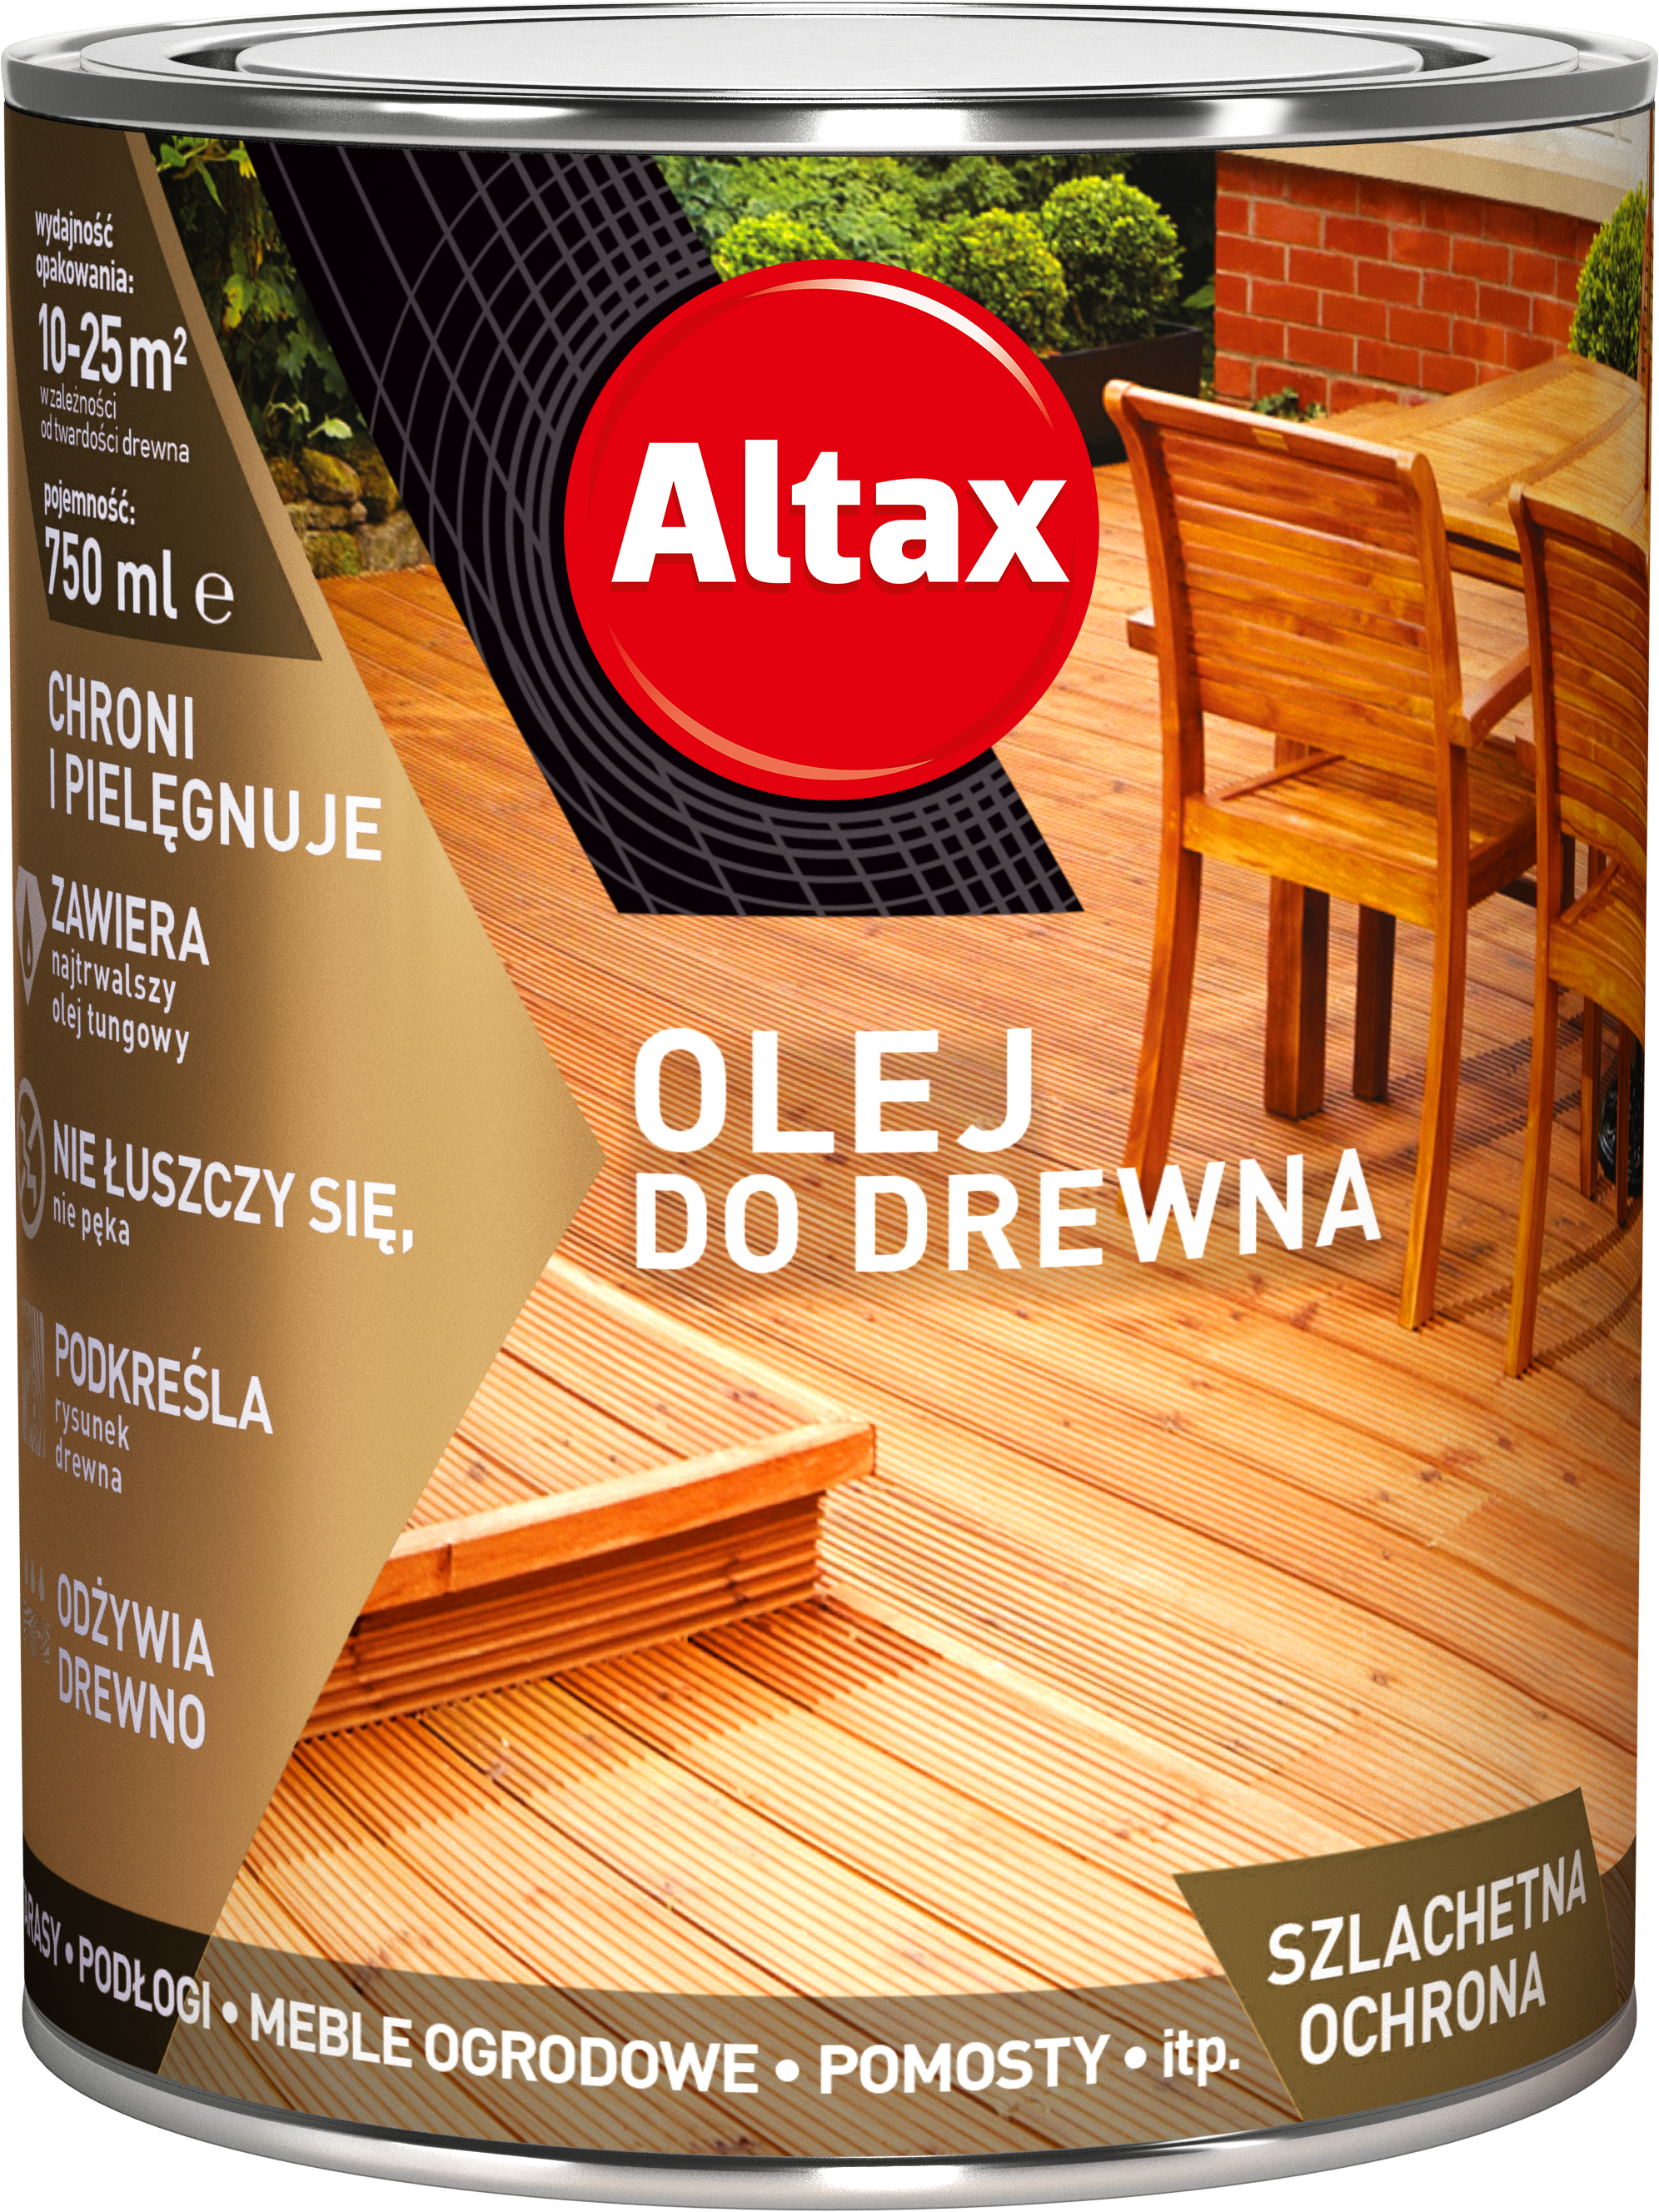 ALTAX-olej-do-drewna-750ml-01